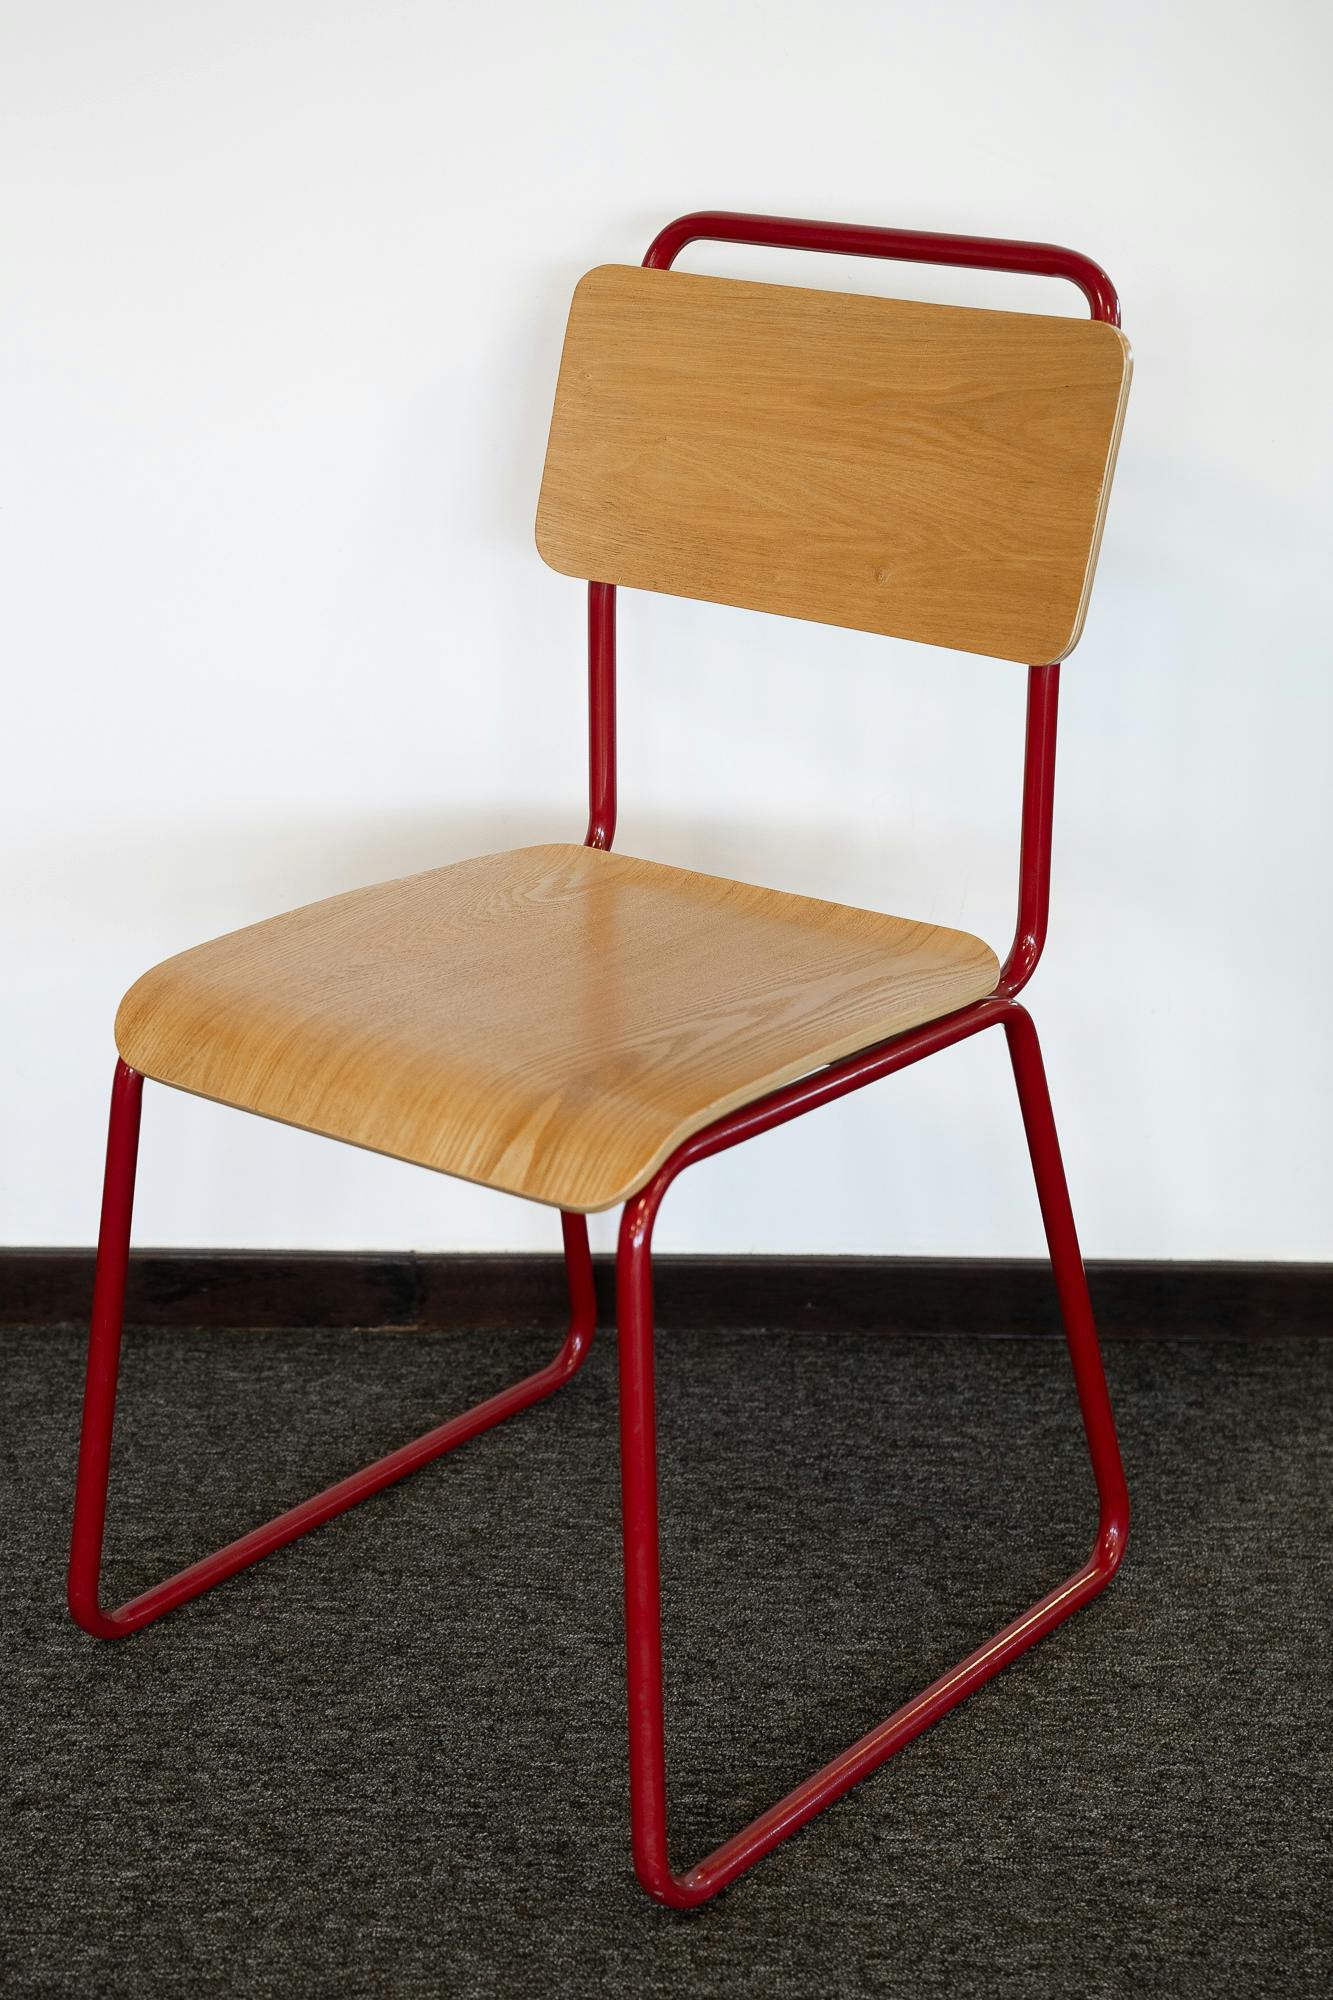 Cafetaria stoel - Tweedehands kwaliteit "Stoelen" - Relieve Furniture - 2